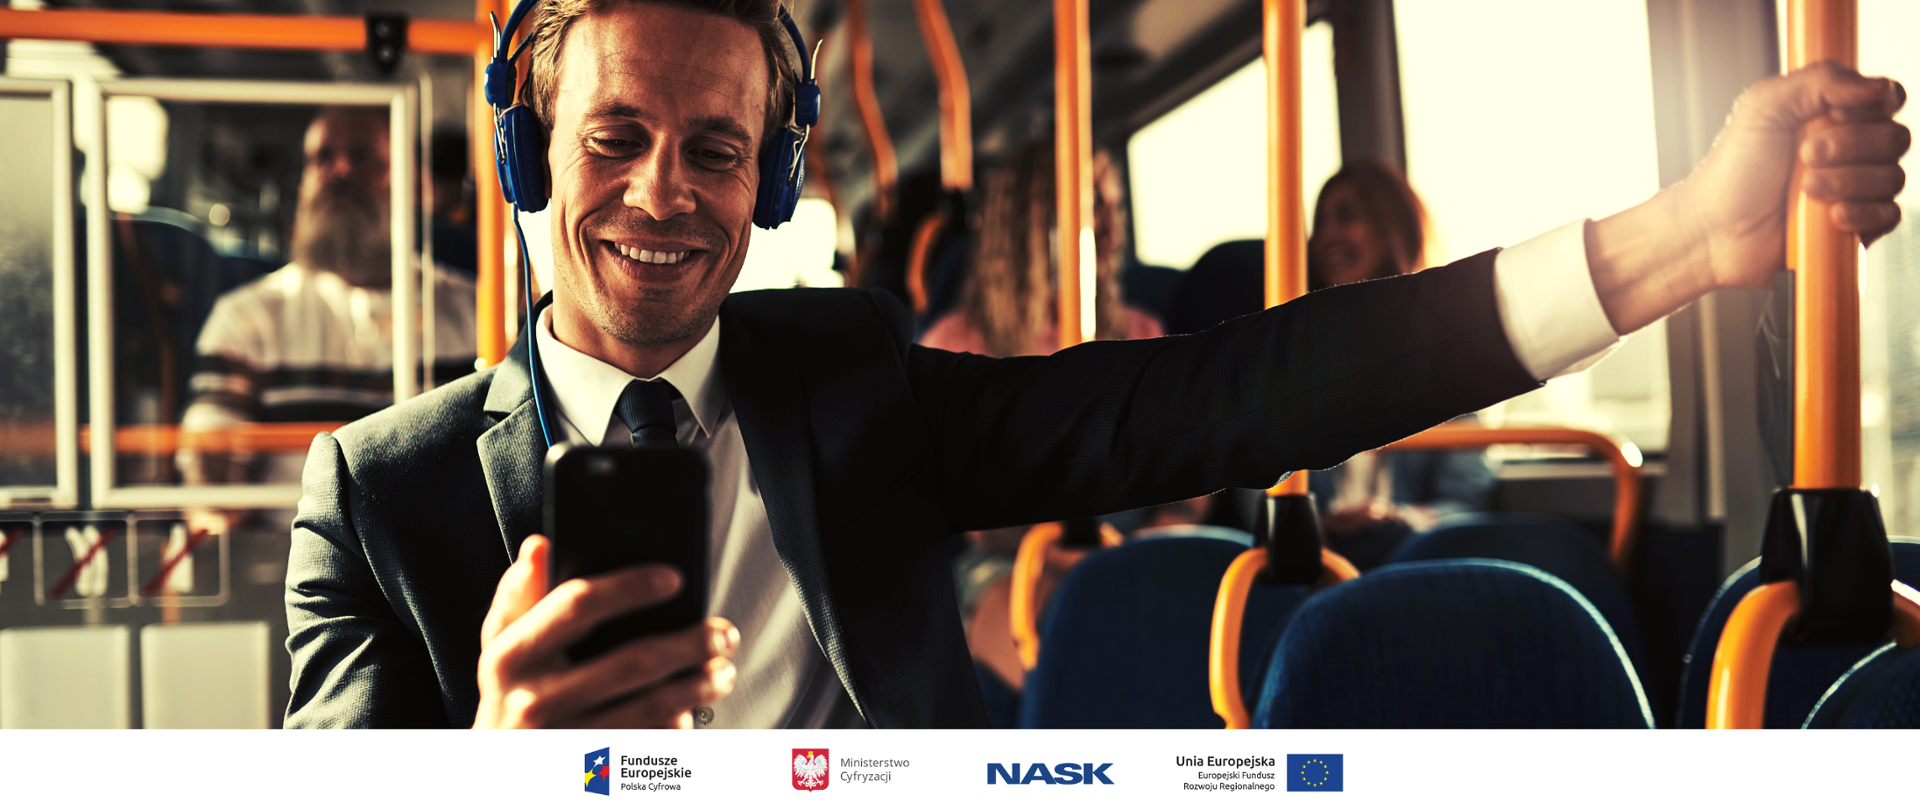 Uśmiechnięty mężczyzna jedzie autobusem. Ma założone słuchawki i wpatruje się w smartfona.